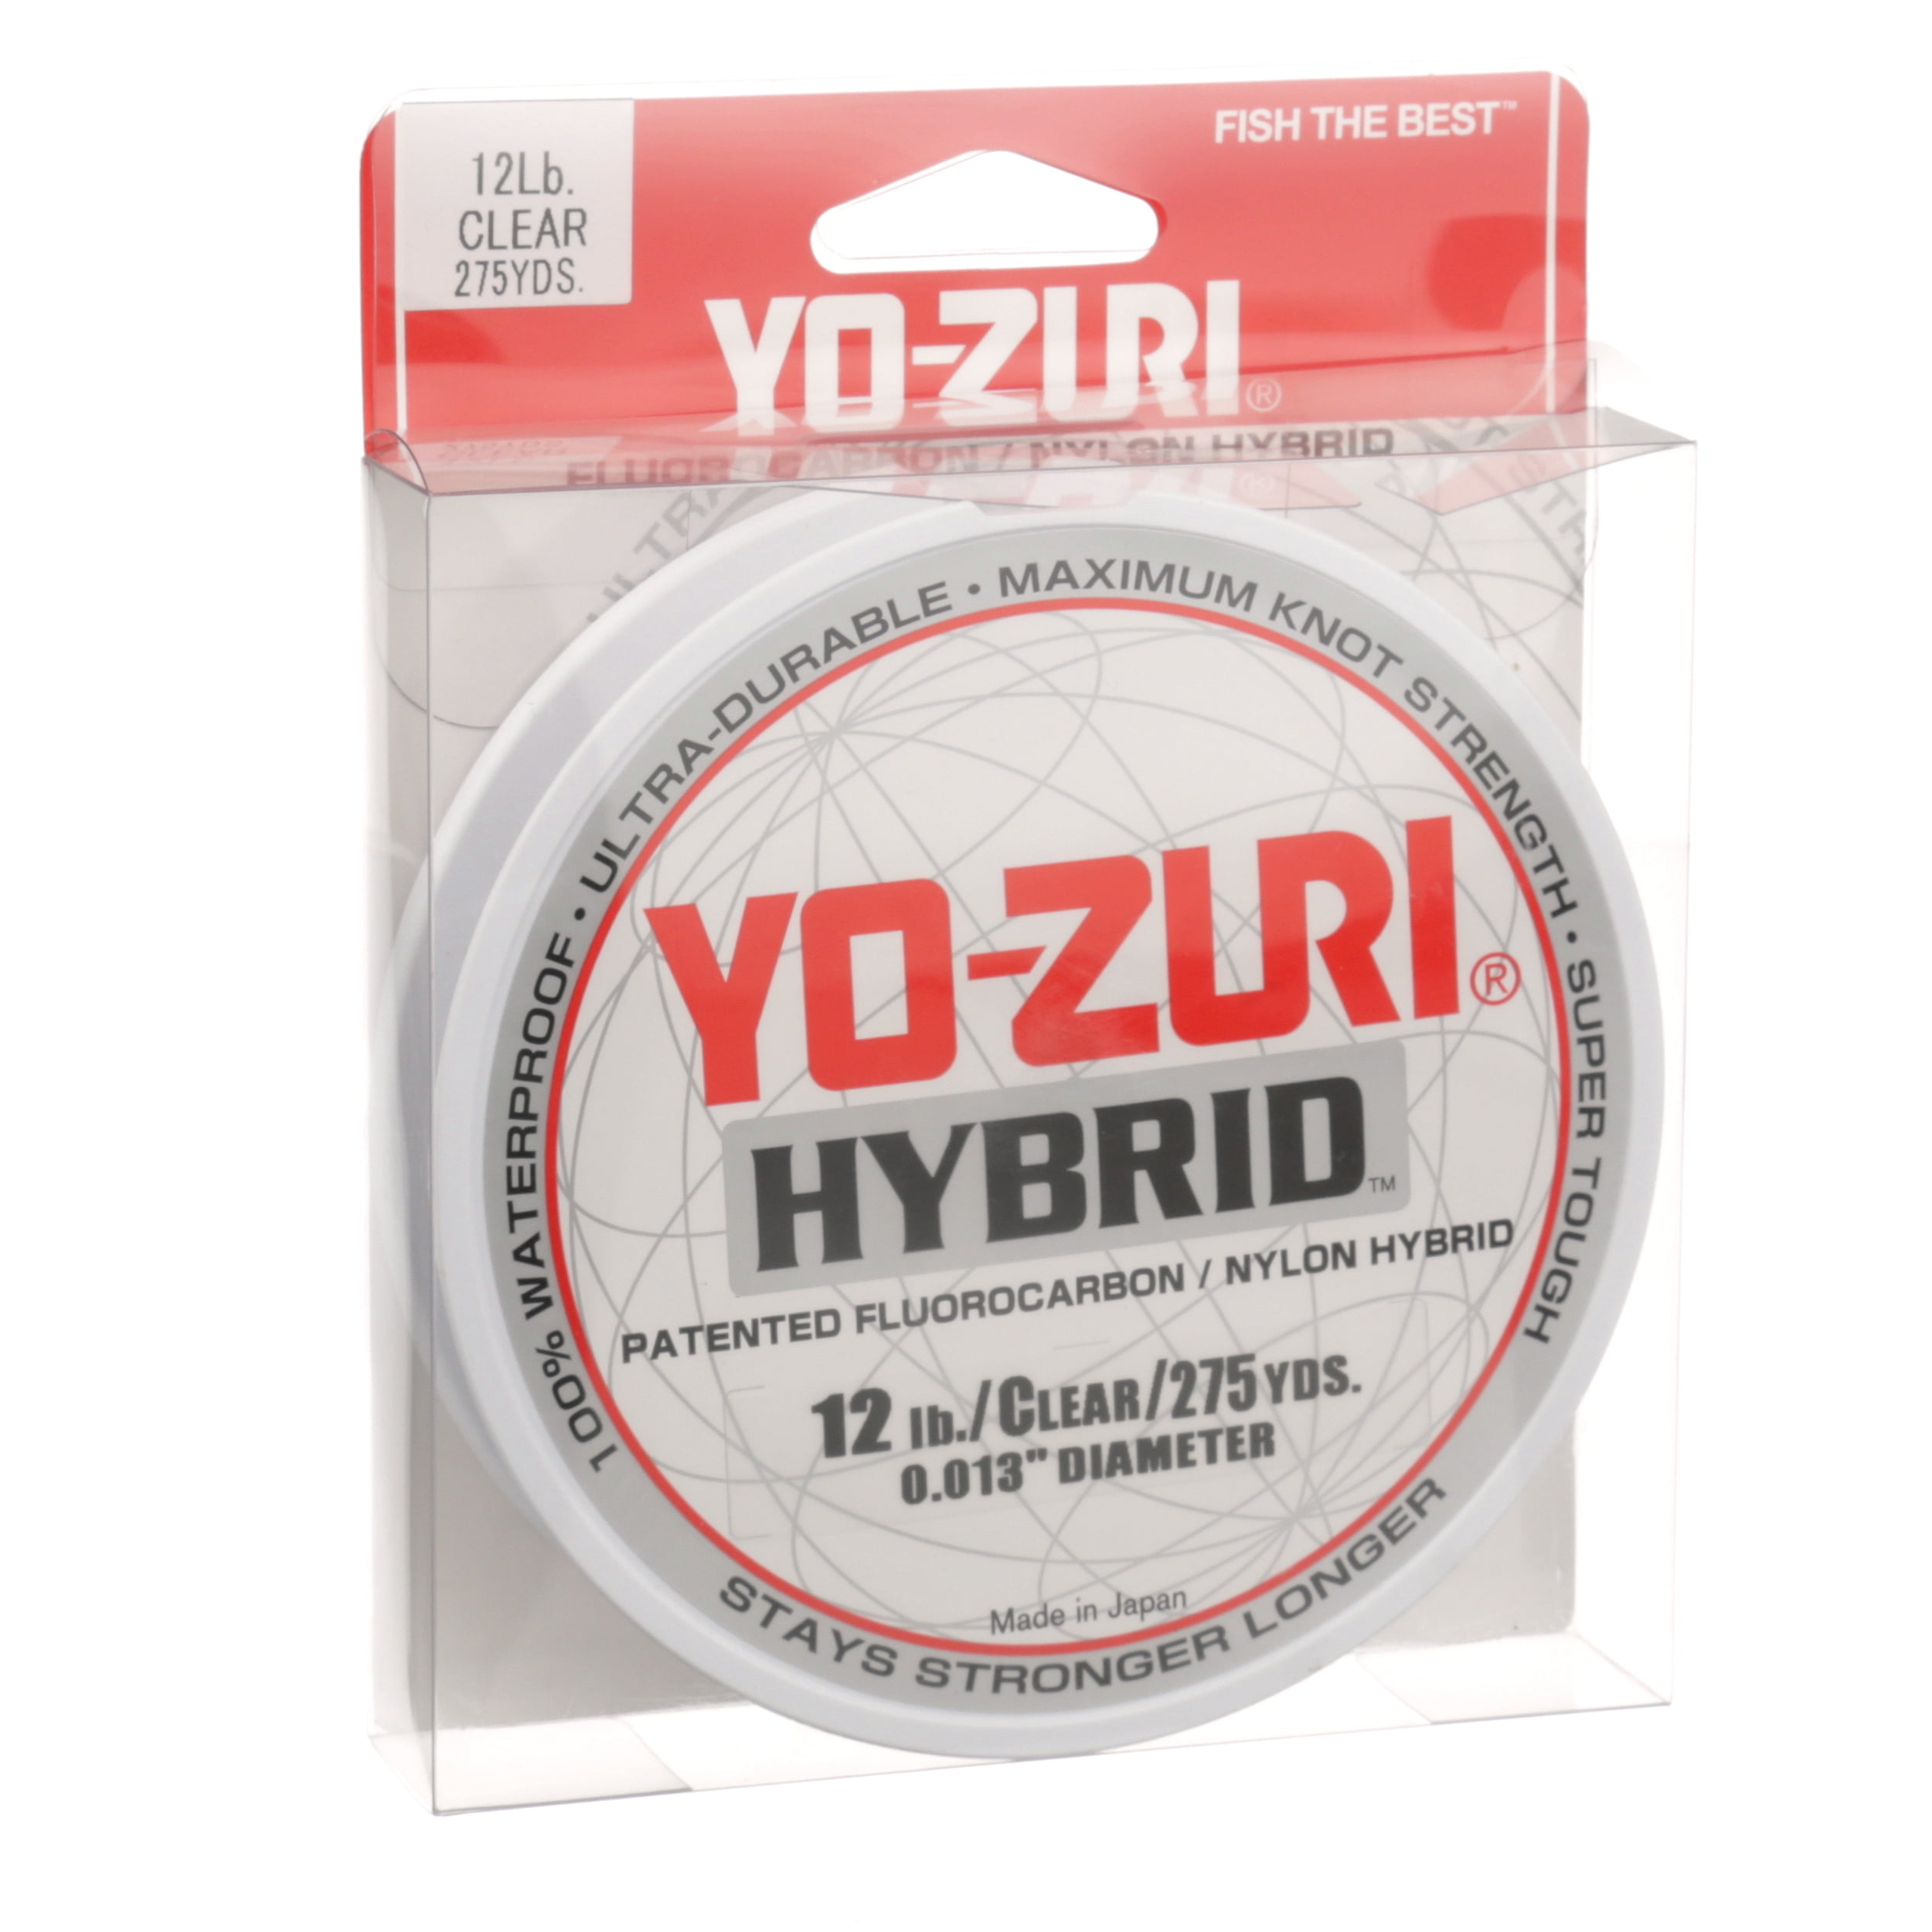 Yo-Zuri Hybrid Clear Line 6lb, 275yd, Flurocarbon/Nylon Hybrid 